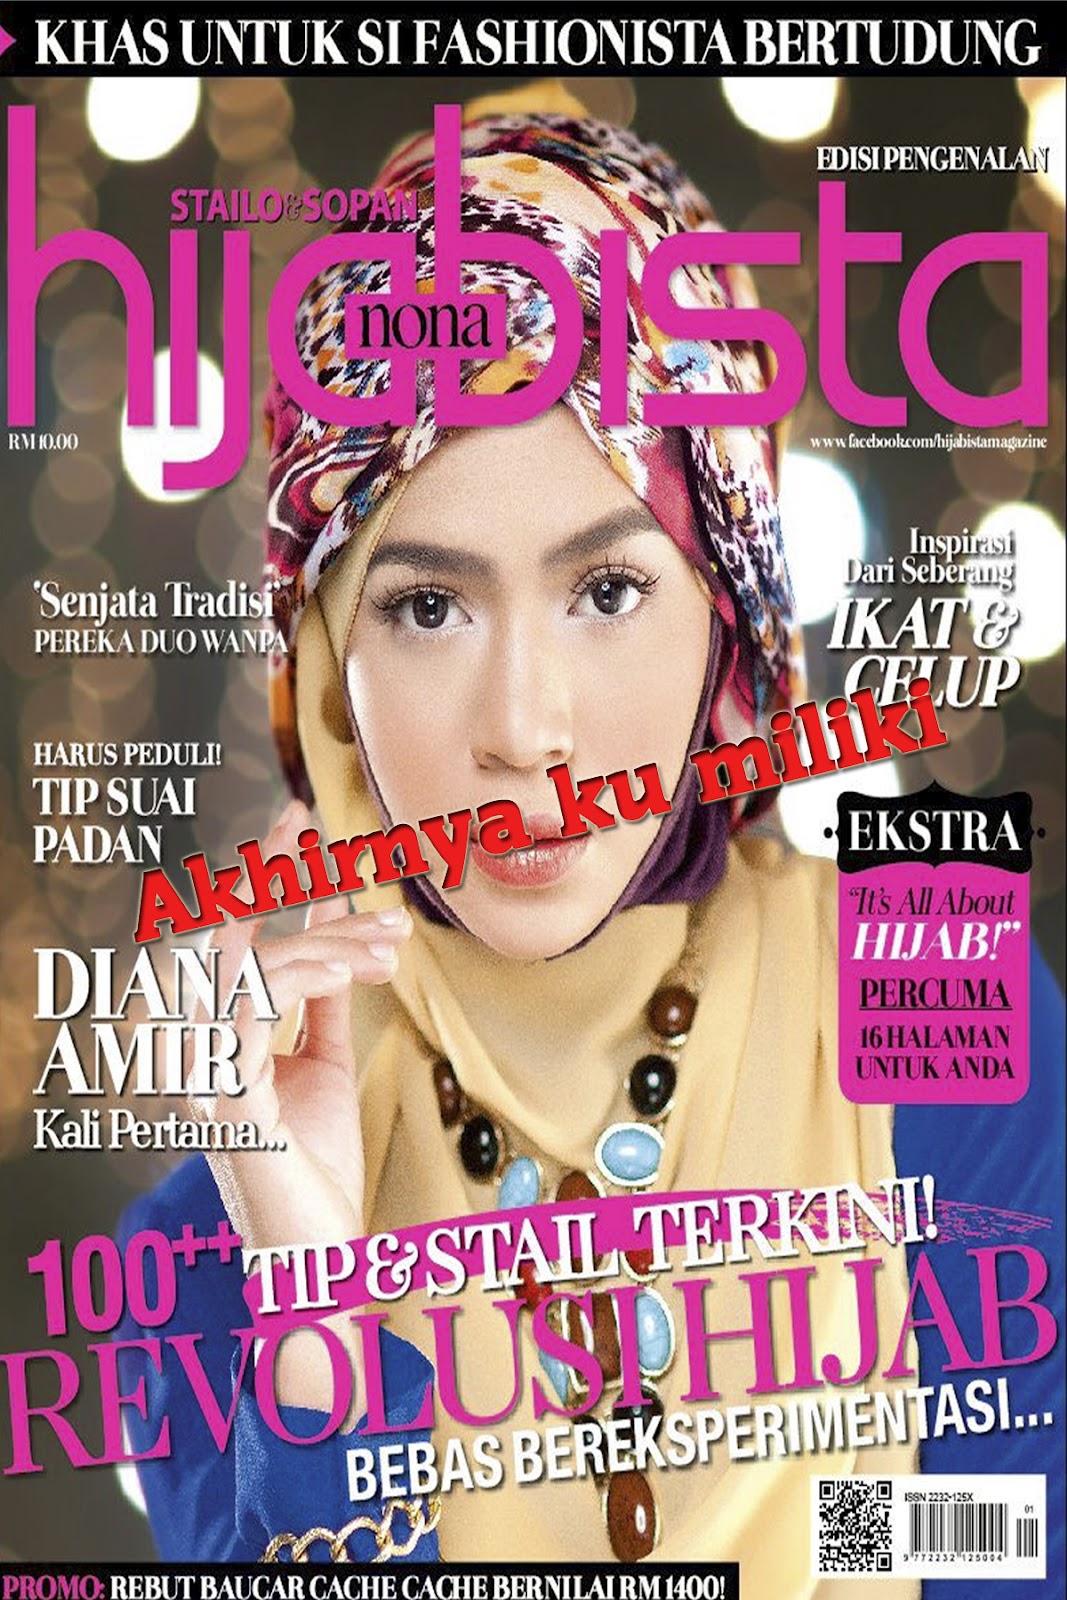 Majalah Hijabista Ku miliki